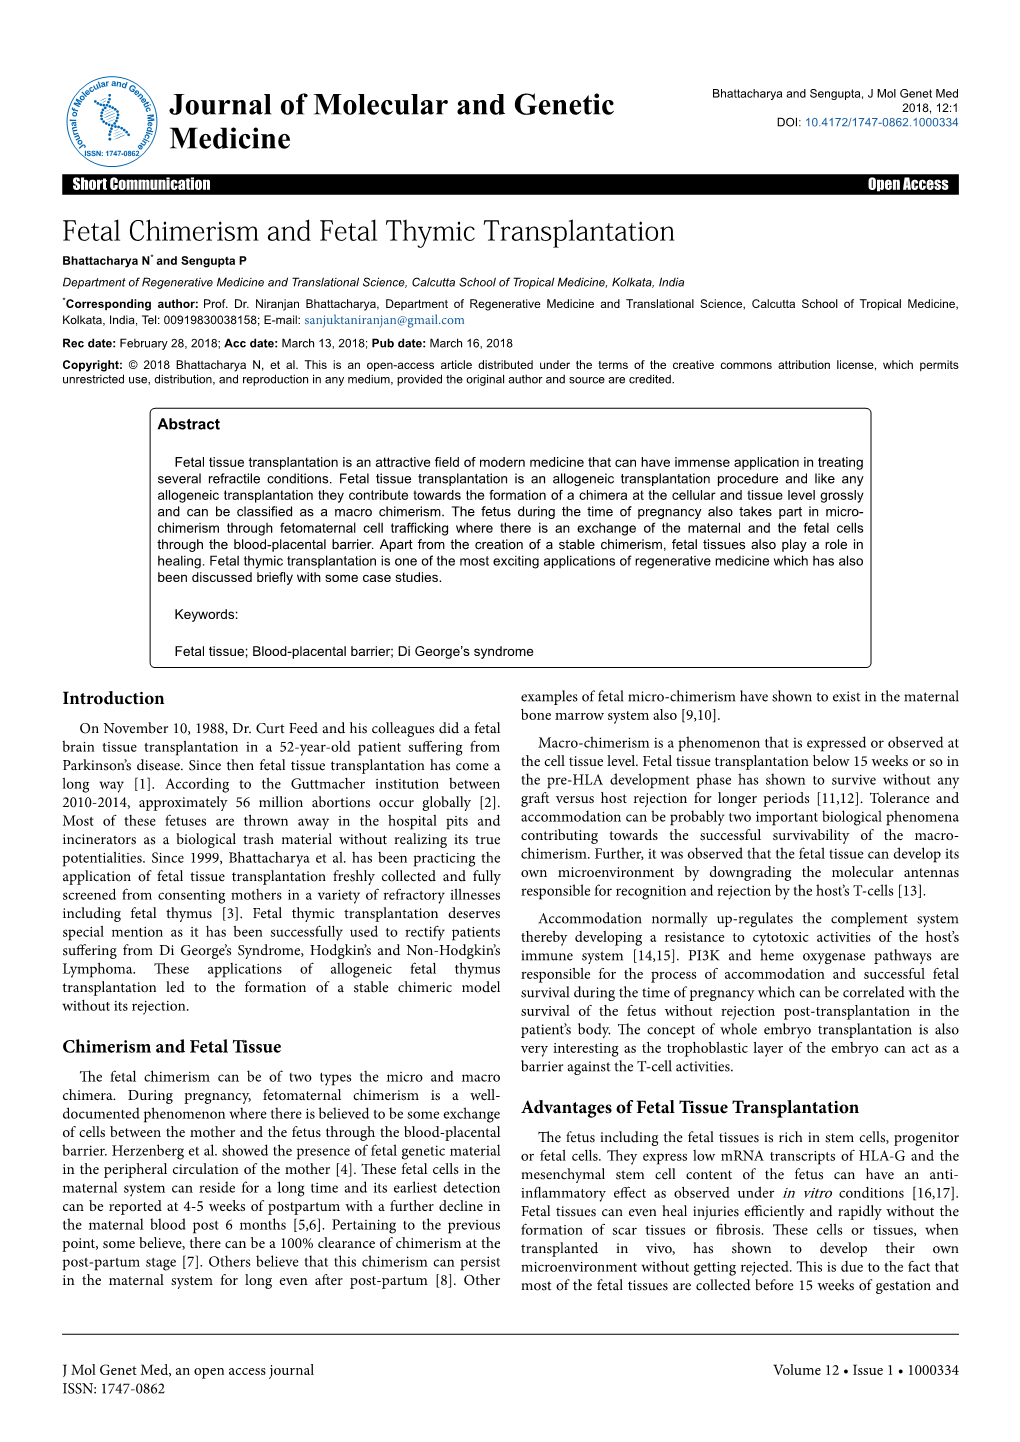 Fetal Chimerism and Fetal Thymic Transplantation